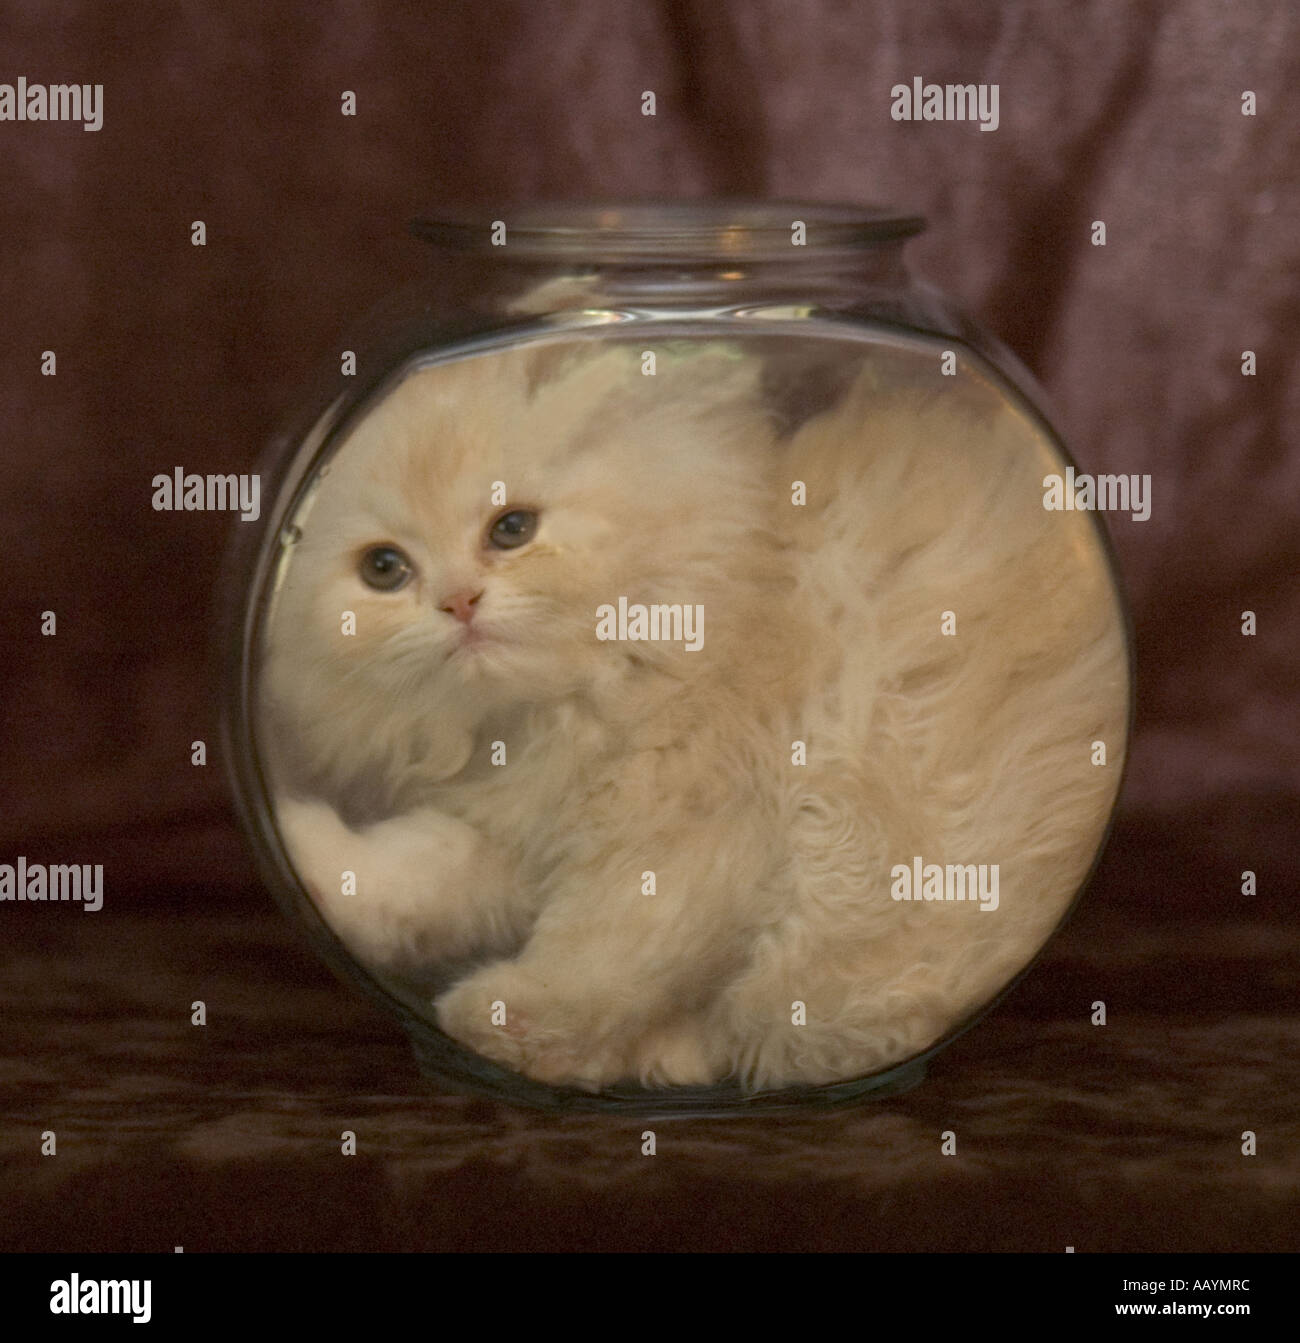 Mignon chaton persan blanc assis ou bloqué en poissons de verre bol. Banque D'Images